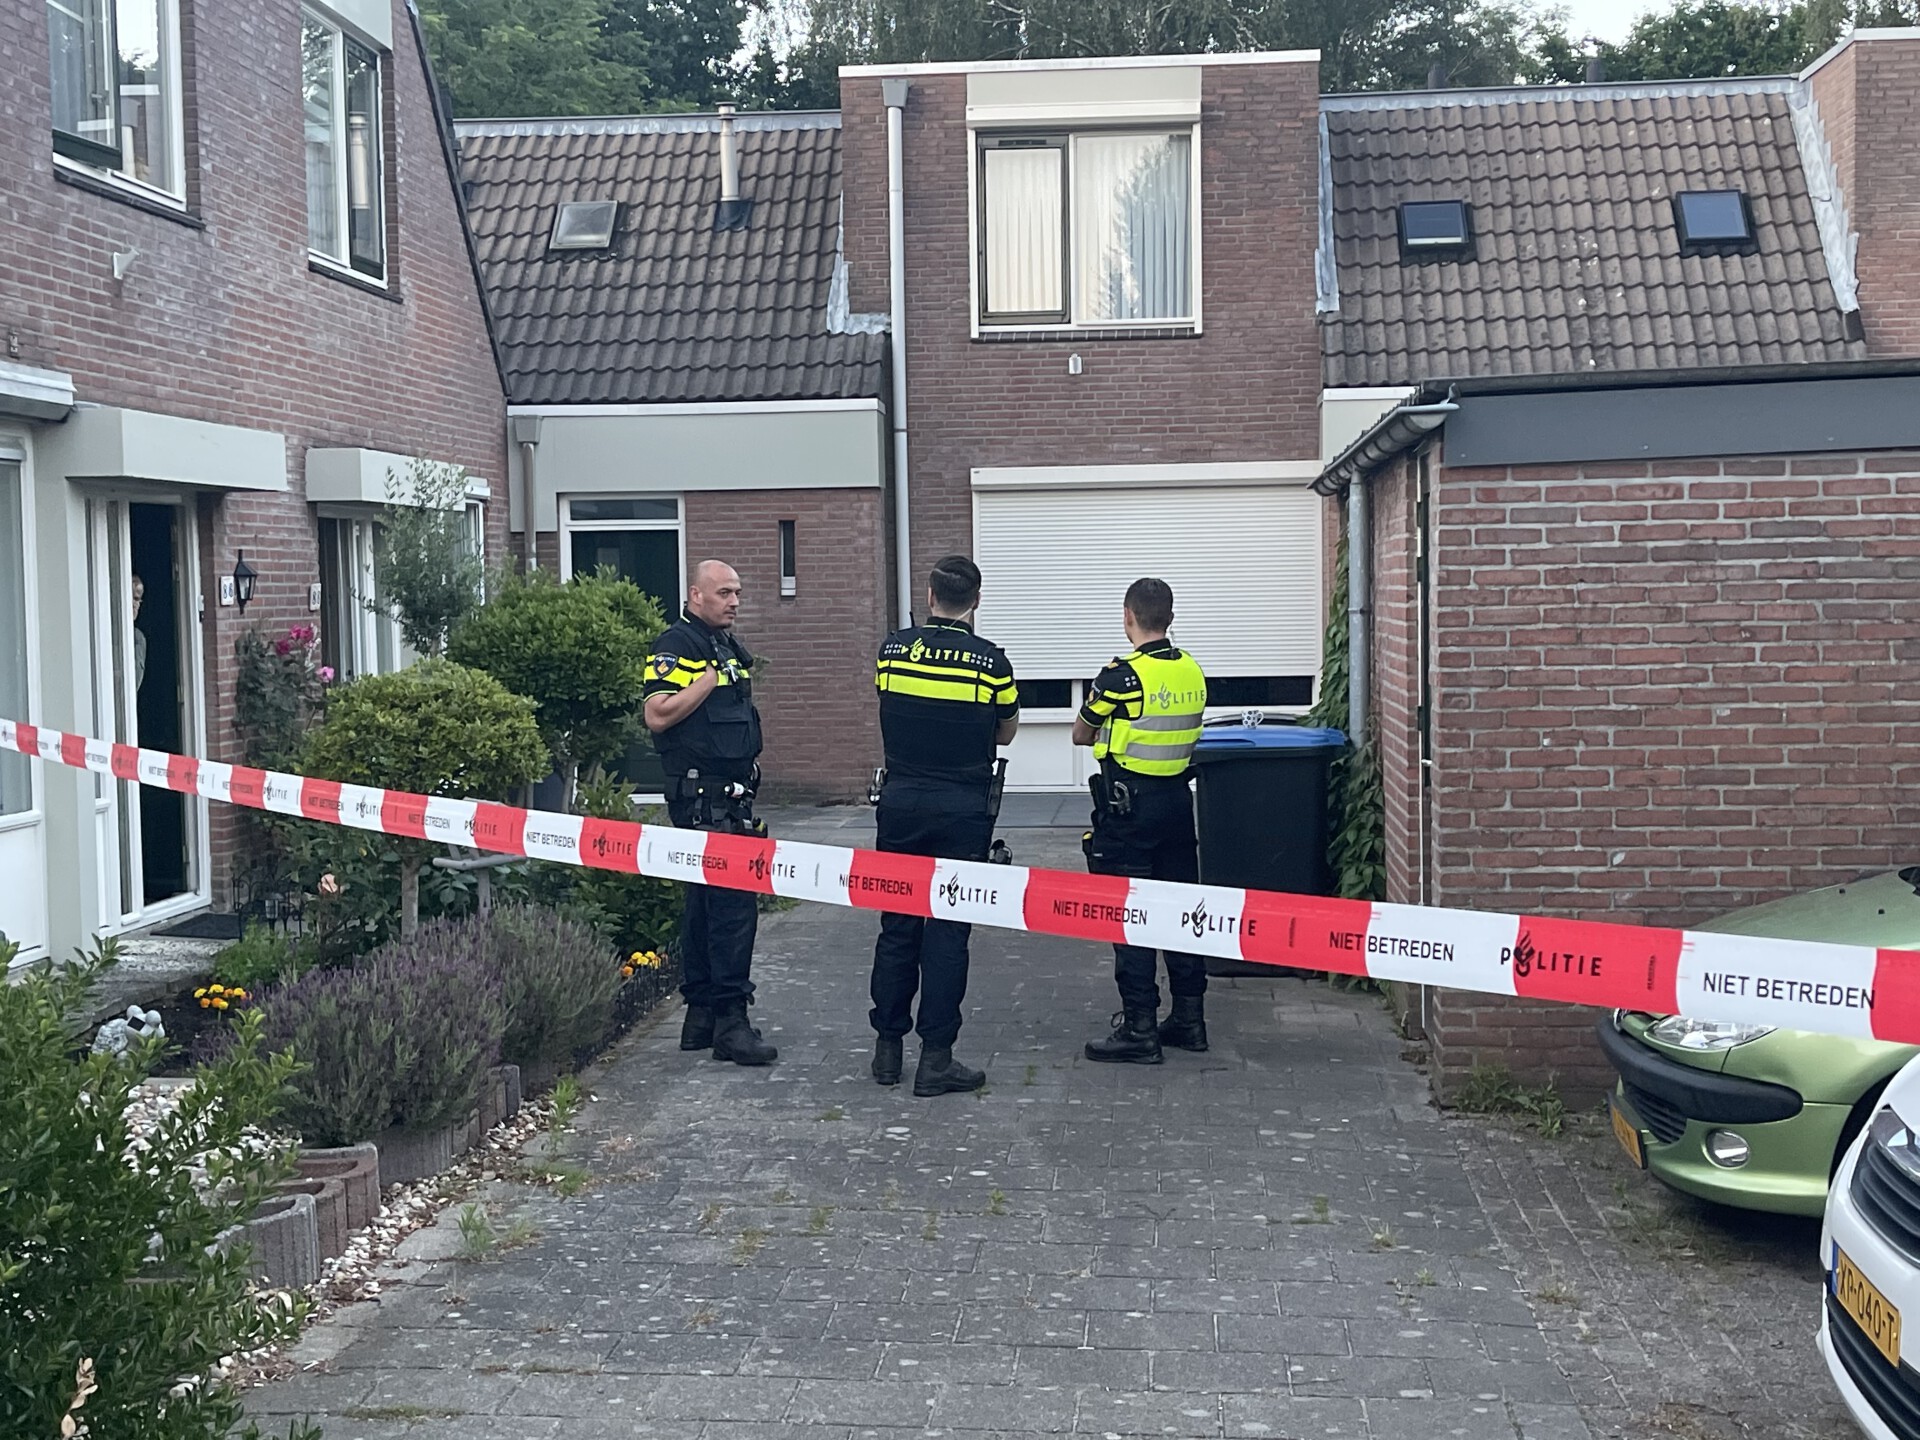 Twee doden gevonden in een woning, politie start groot onderzoek